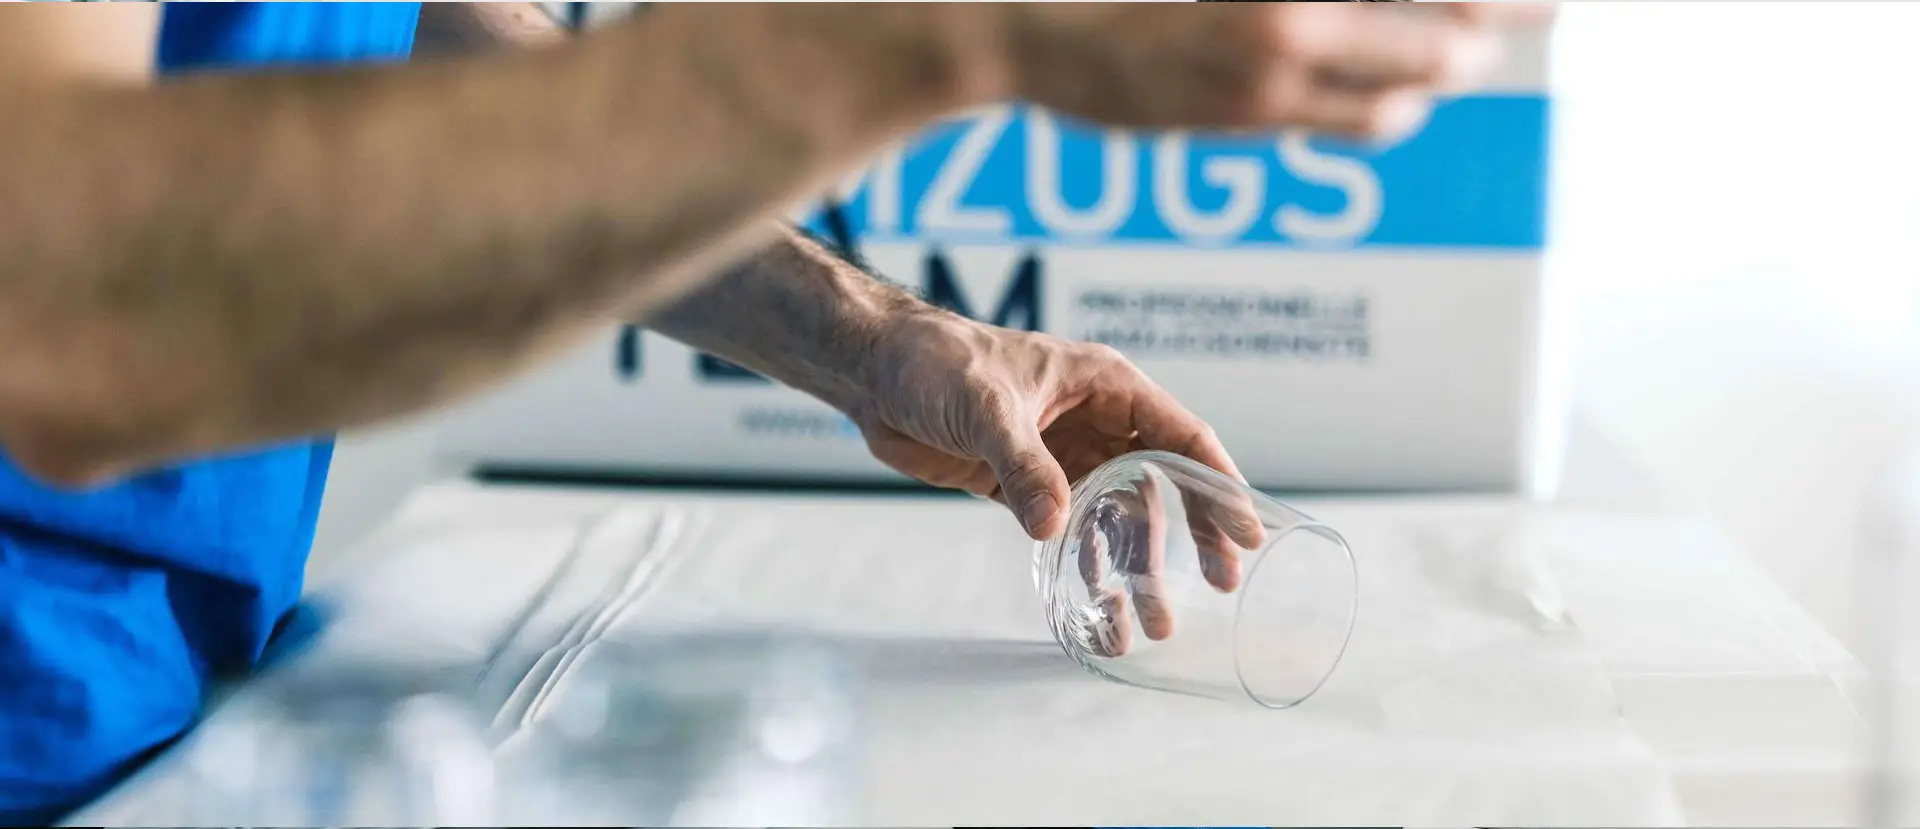 Möbelpacker packt Glas mit Papier ein für einen sicheren Transport. DasUmzugsteam